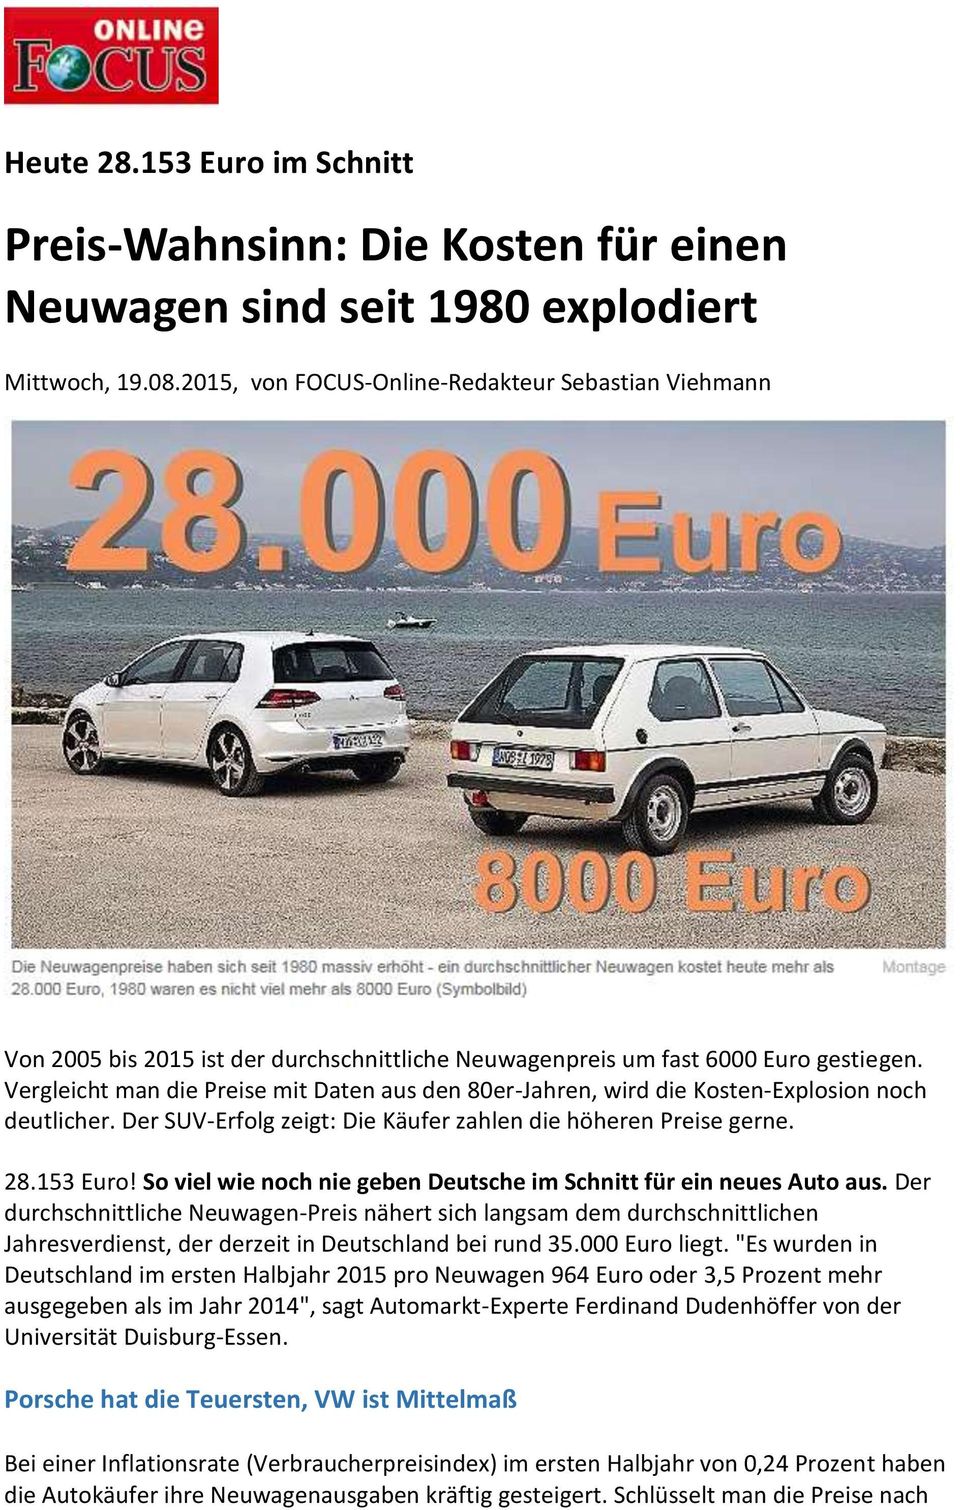 Vergleicht man die Preise mit Daten aus den 80er-Jahren, wird die Kosten-Explosion noch deutlicher. Der SUV-Erfolg zeigt: Die Käufer zahlen die höheren Preise gerne. 28.153 Euro!